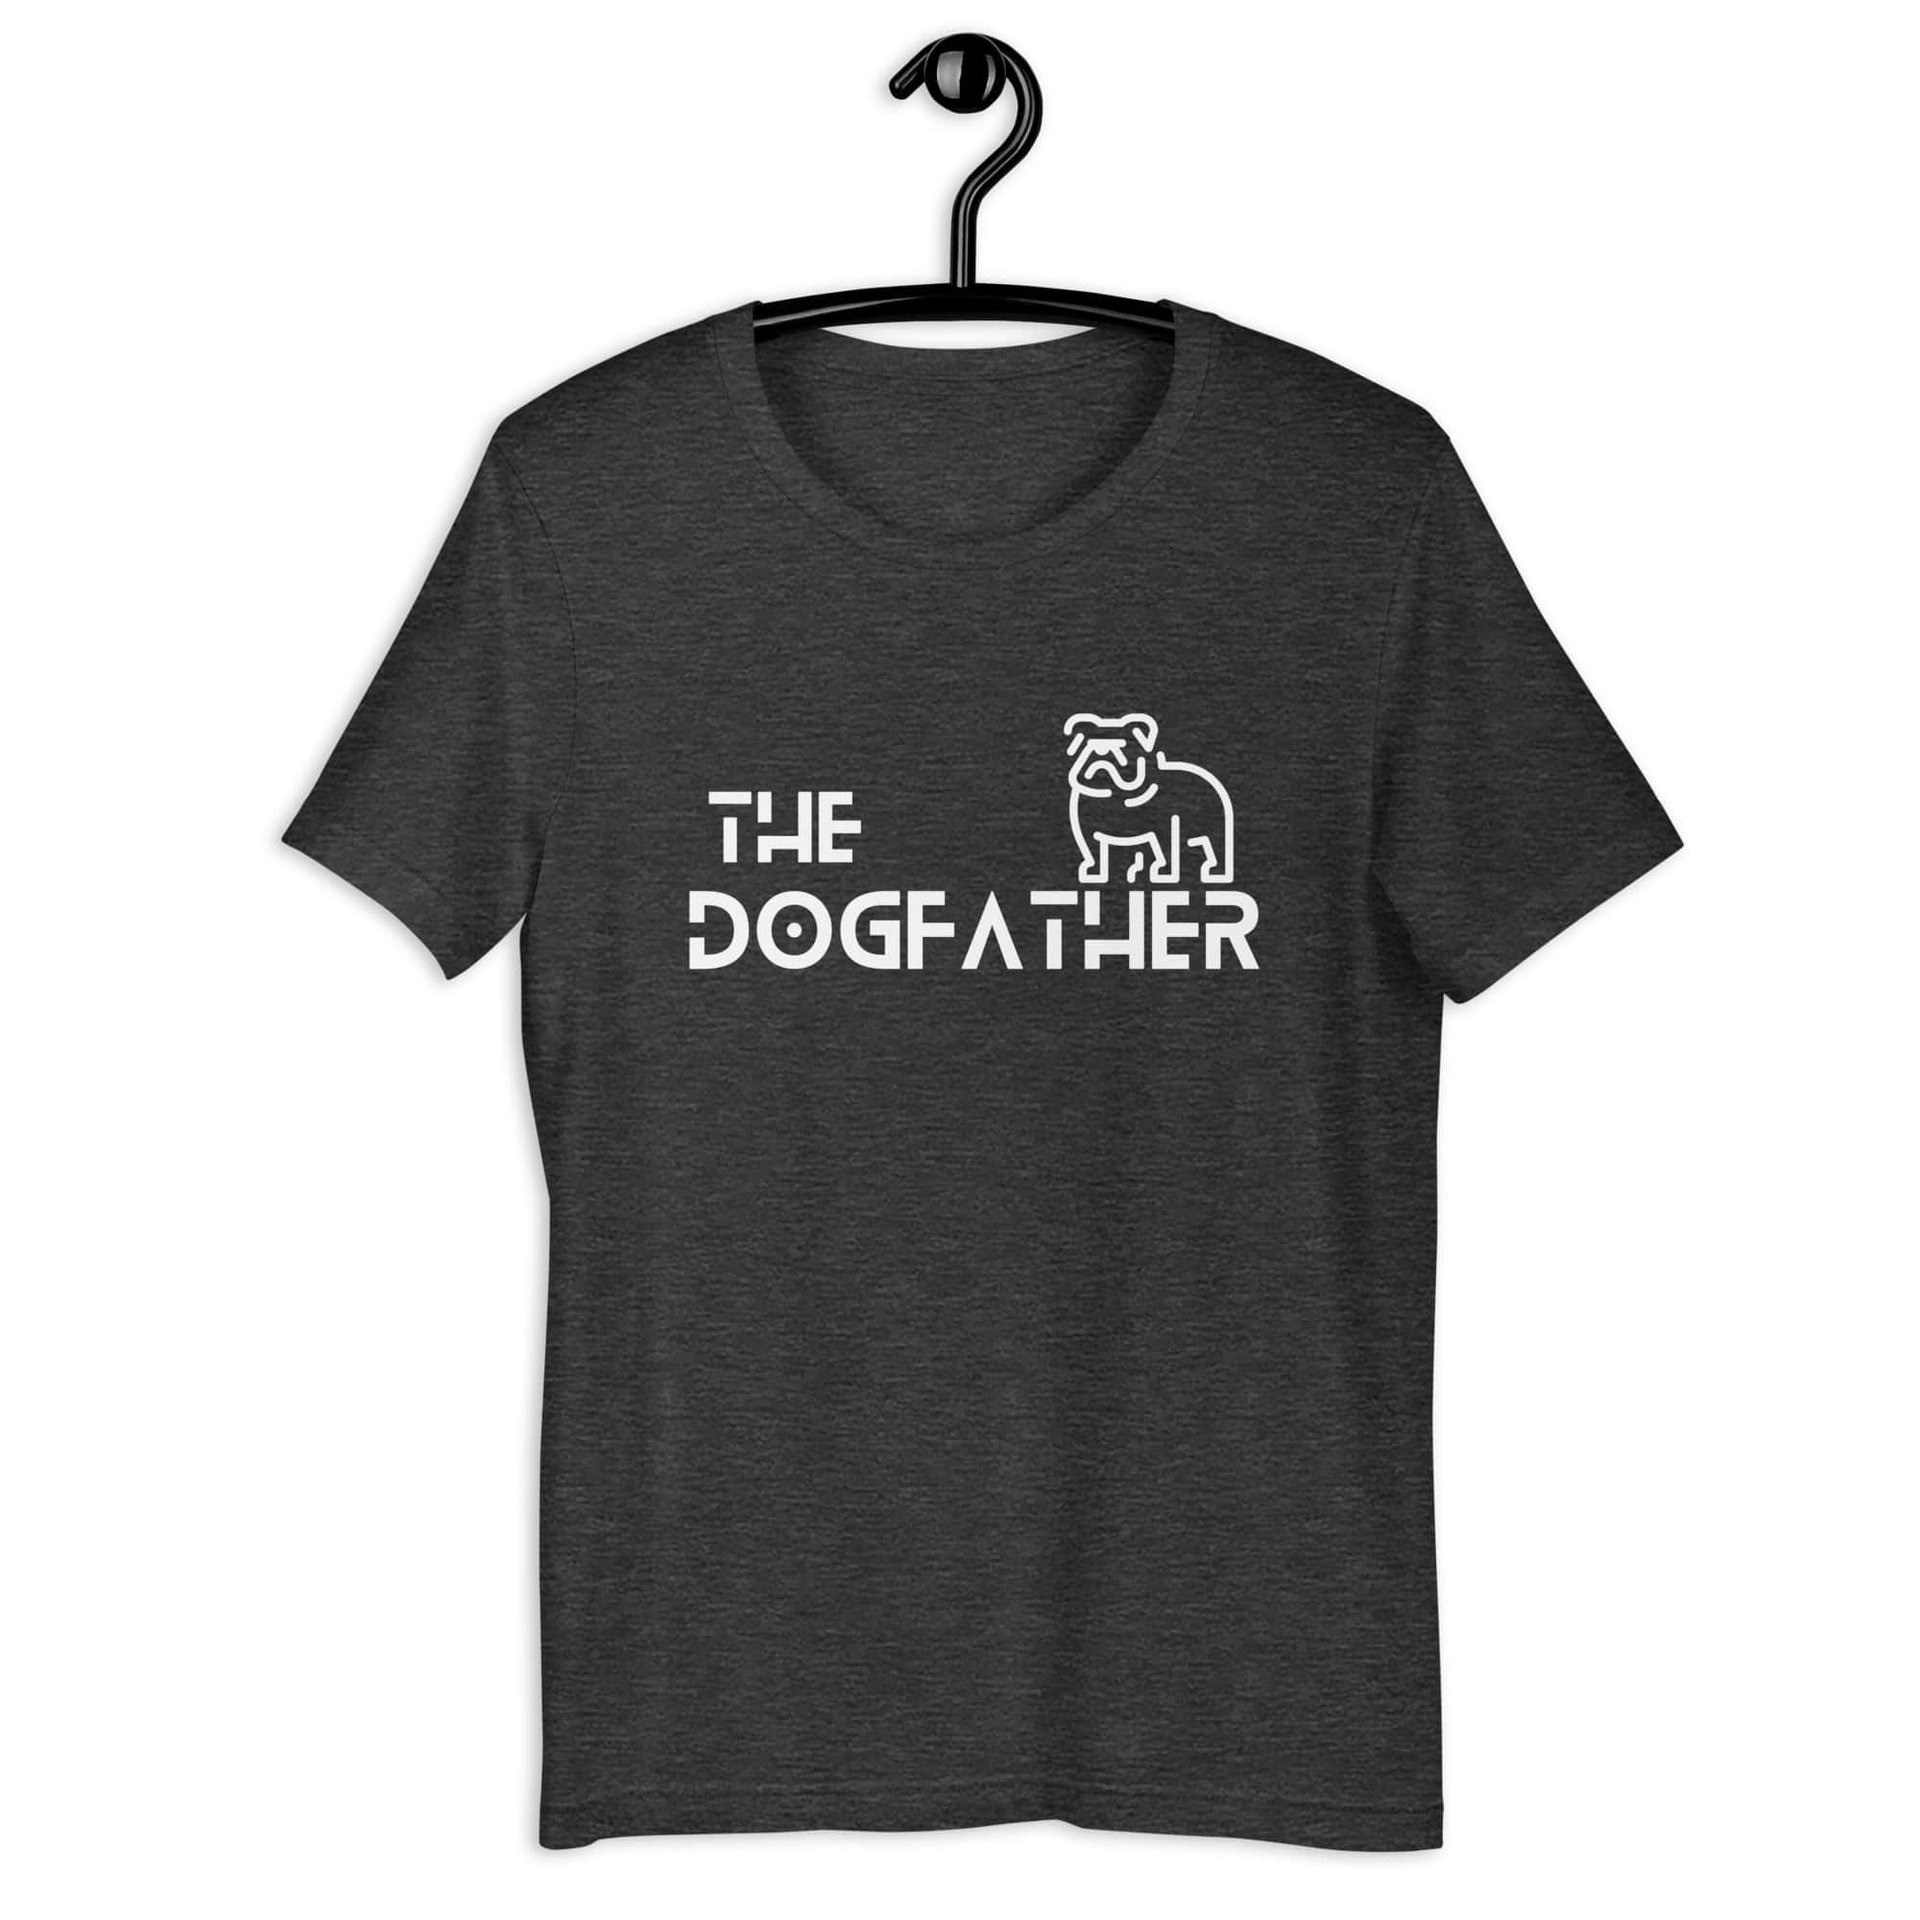 The Dogfather Bulldog Unisex T-Shirt. Dark Grey